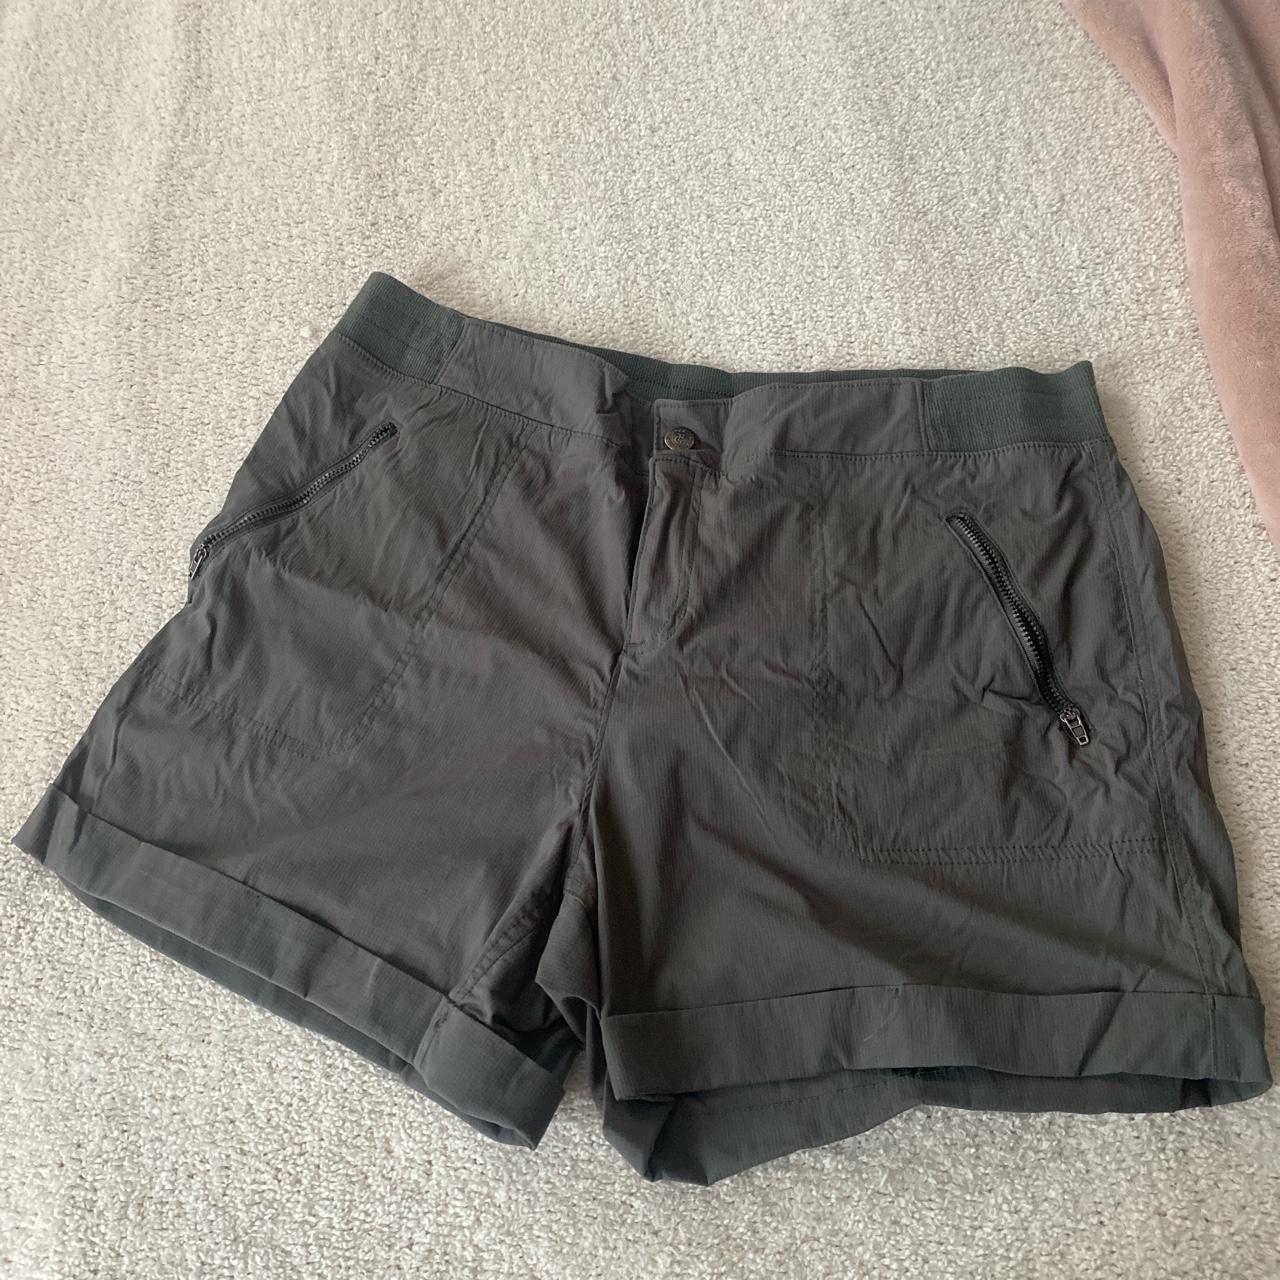 Tangerine Womens Athletic Stretchy Skort - Skirt/Shorts - Gray